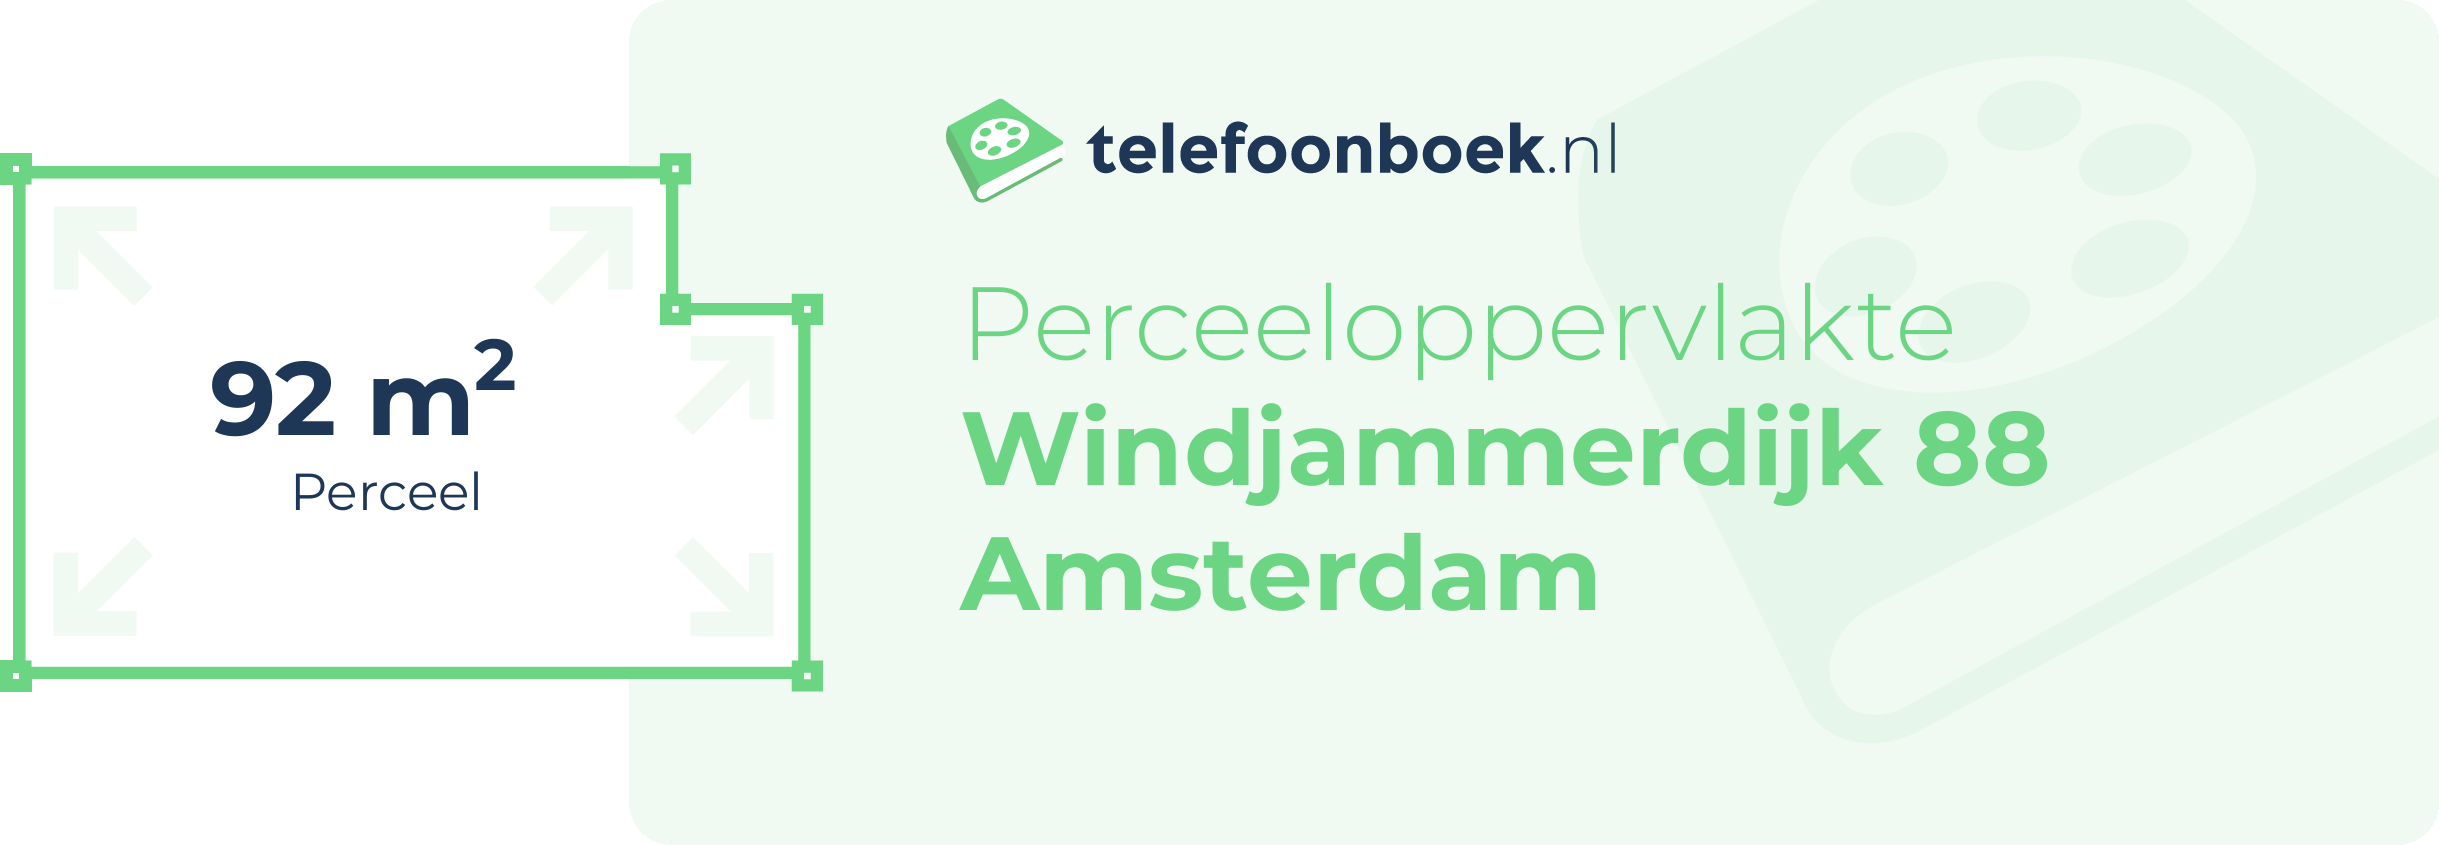 Perceeloppervlakte Windjammerdijk 88 Amsterdam